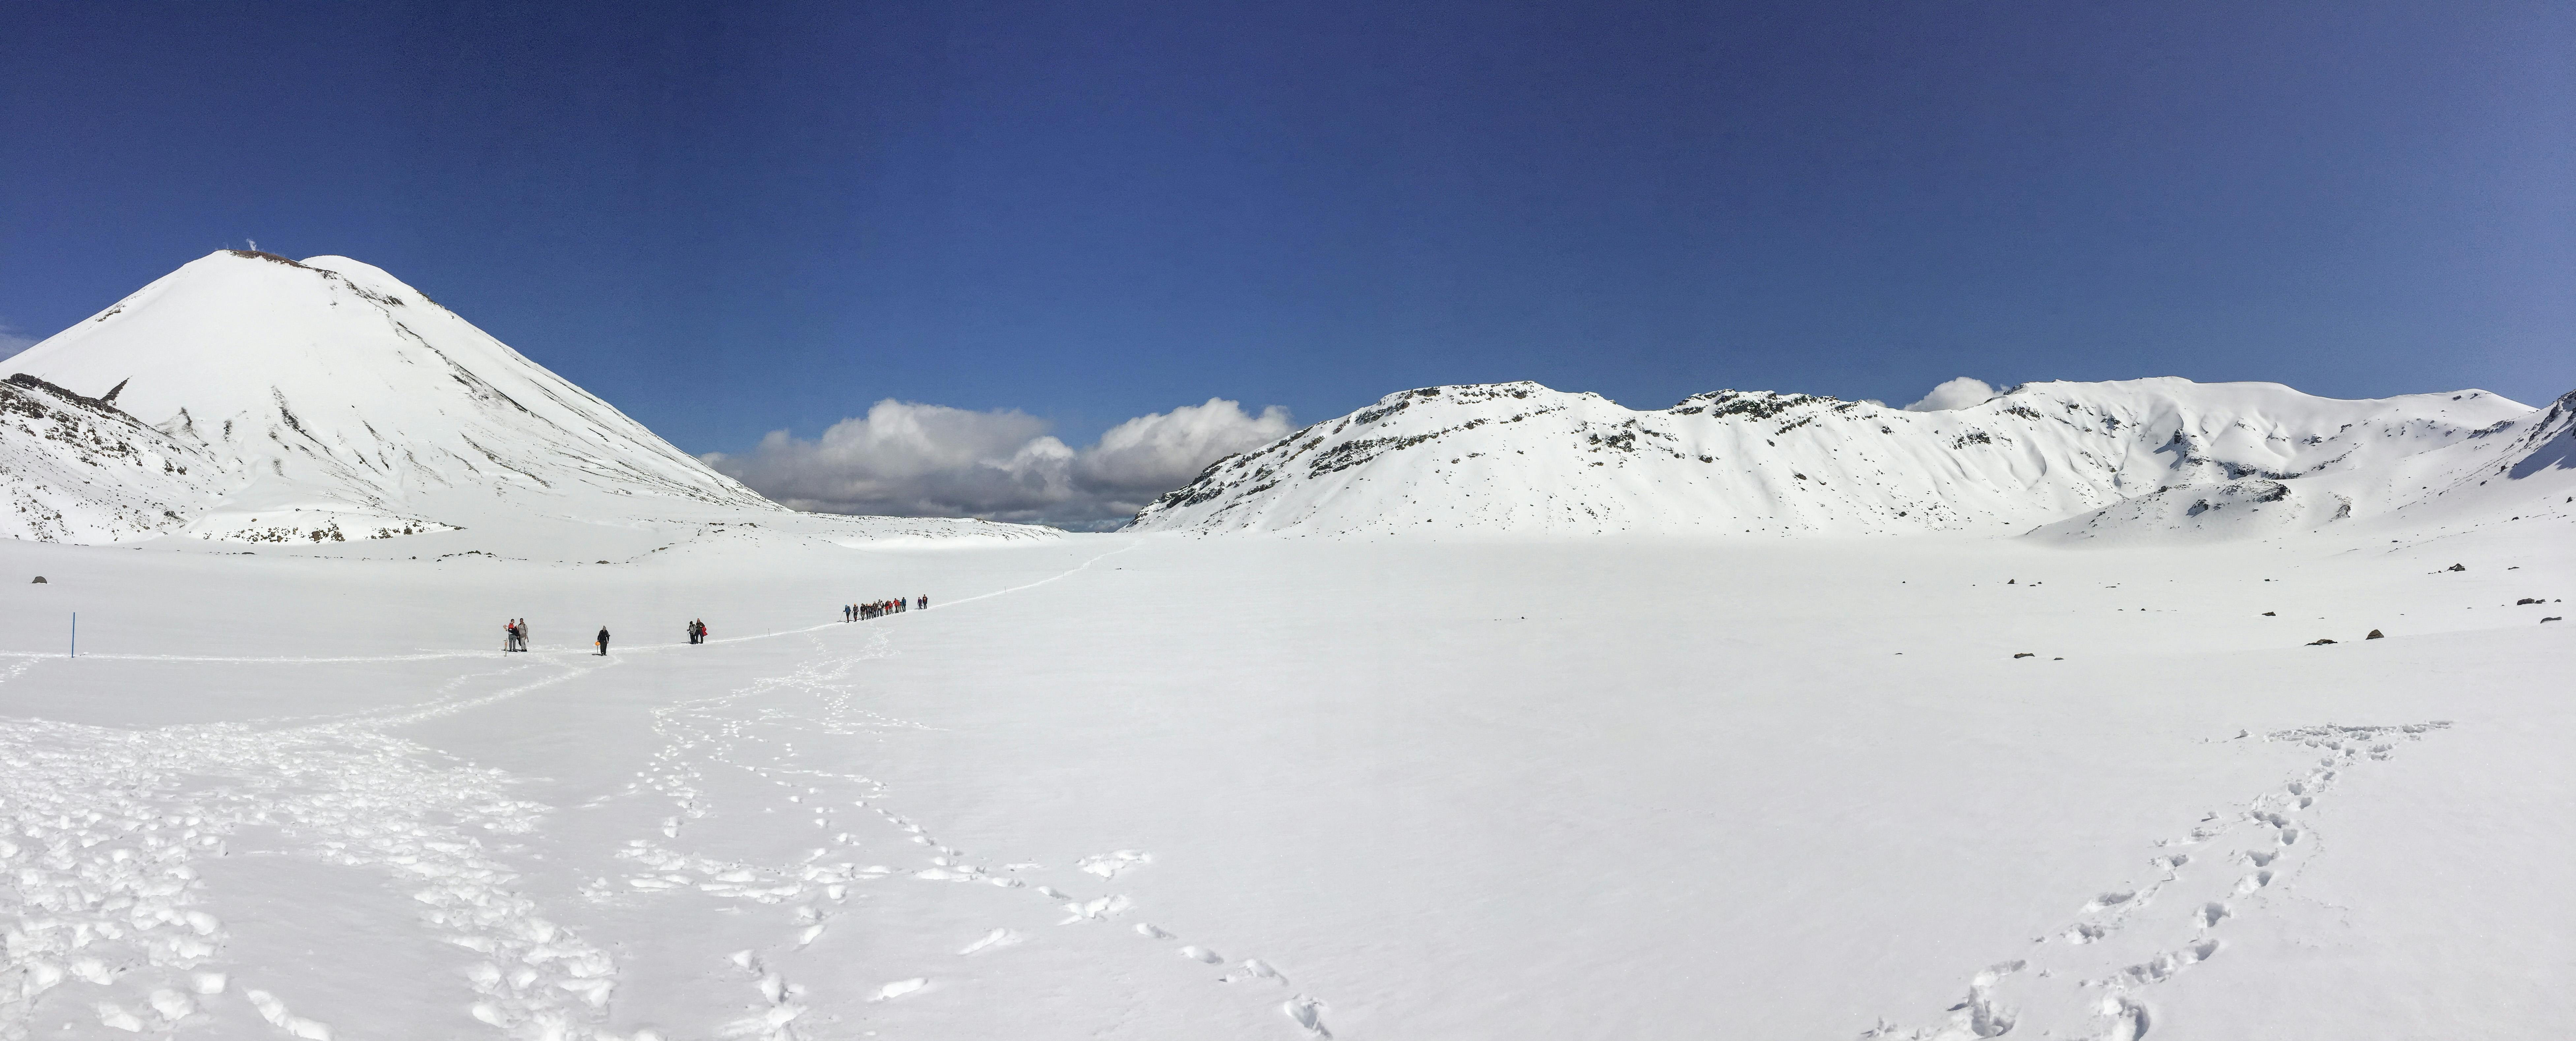 Tongariro Crossing in winter, South Crater